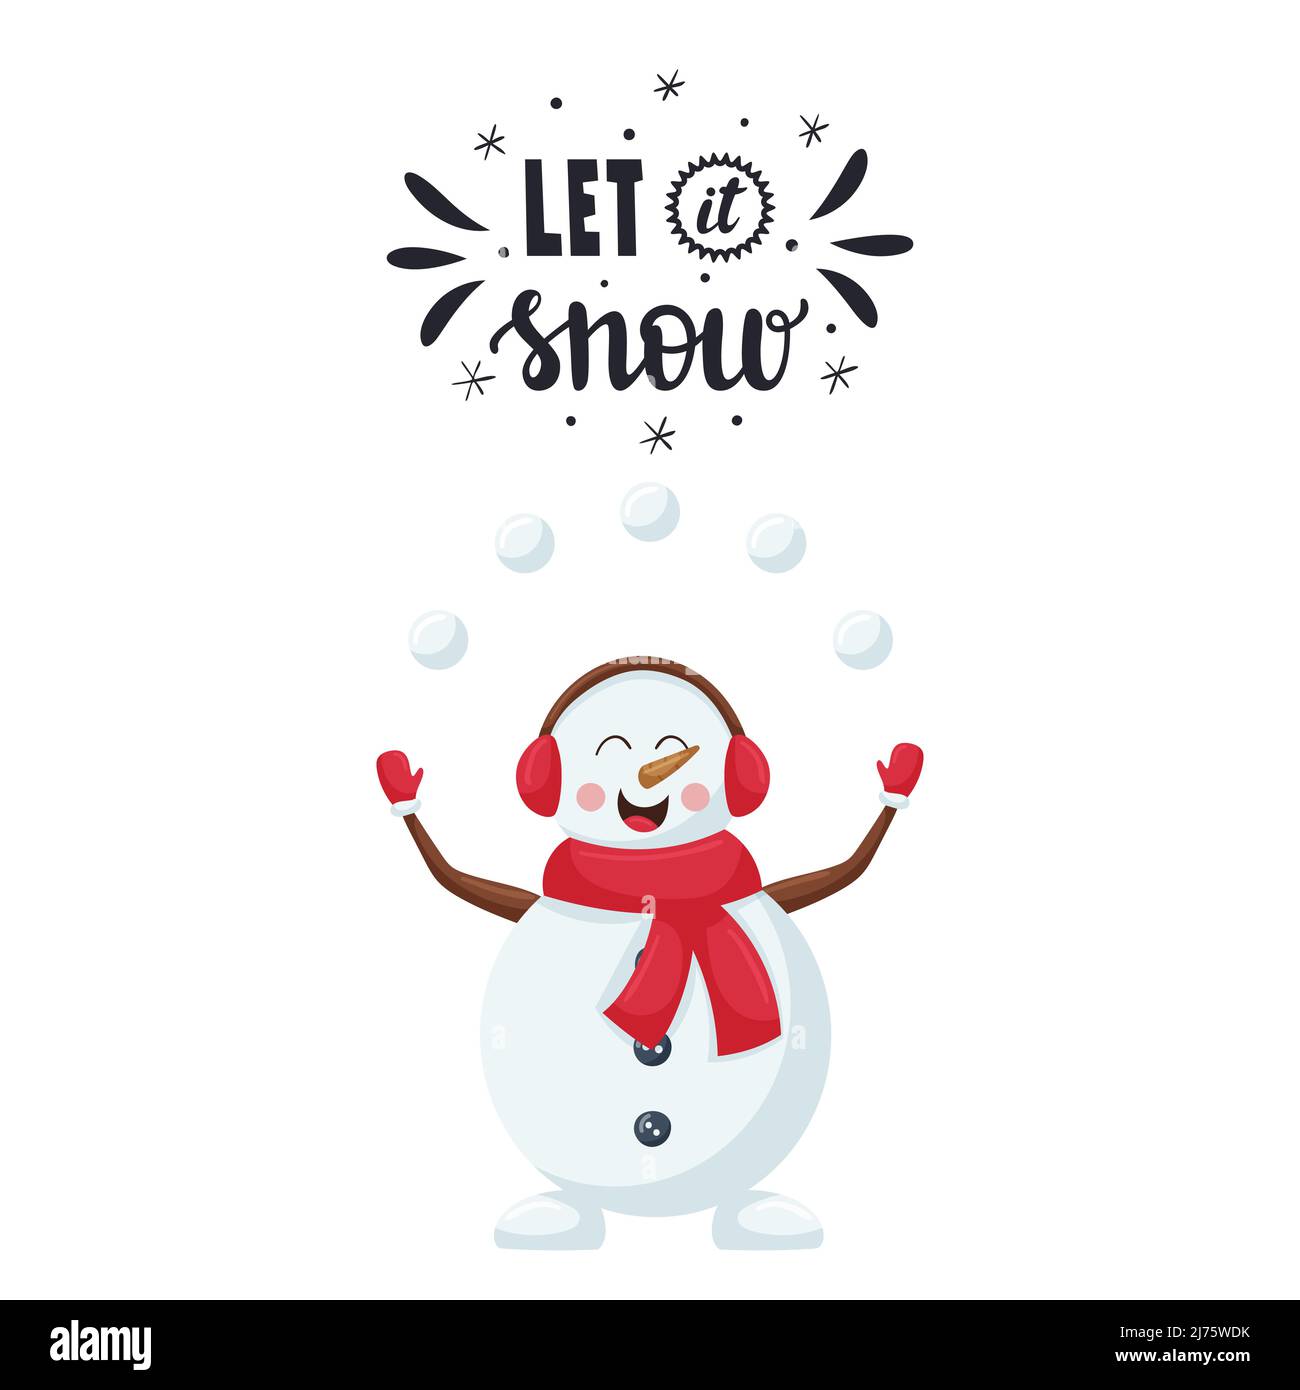 Une carte postale avec un bonhomme de neige joyeux et souriant dans un  foulard rouge qui jongle avec des boules de neige. Mot-lettrage à la main -  Laissez-le neiger. Vecto de couleur